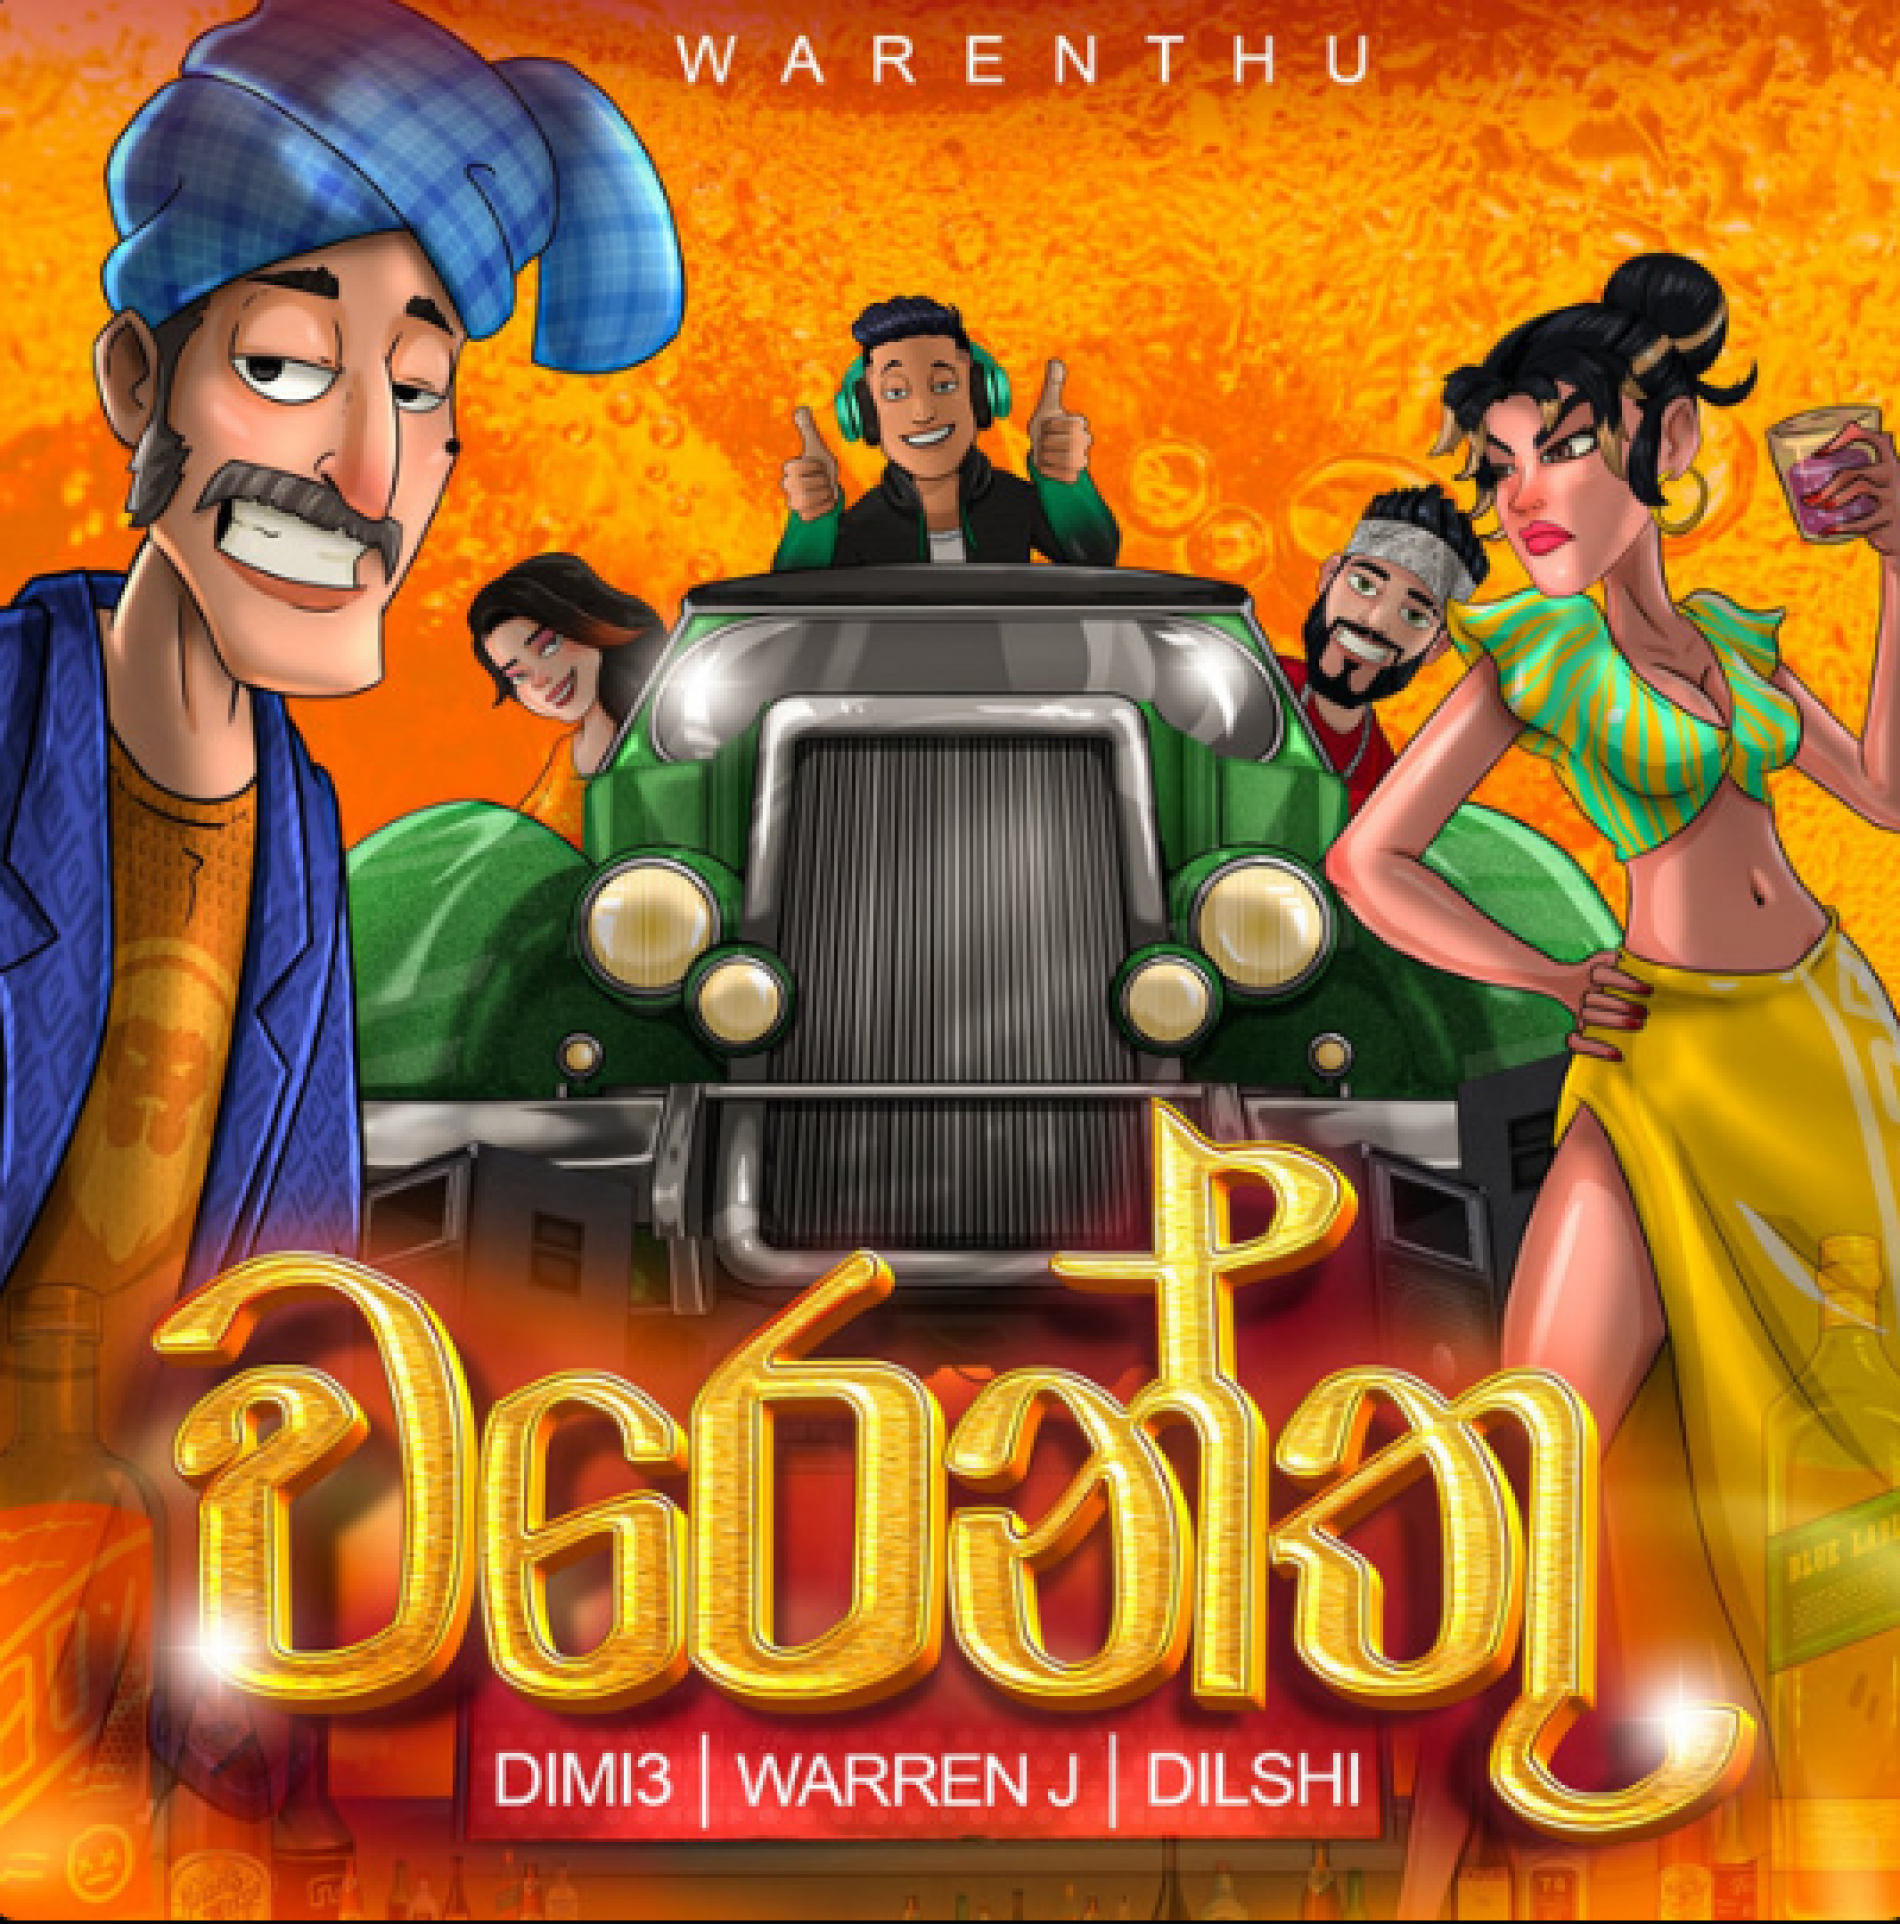 New Music : Warren J x Dimi3 & Dilshi – Warenthu